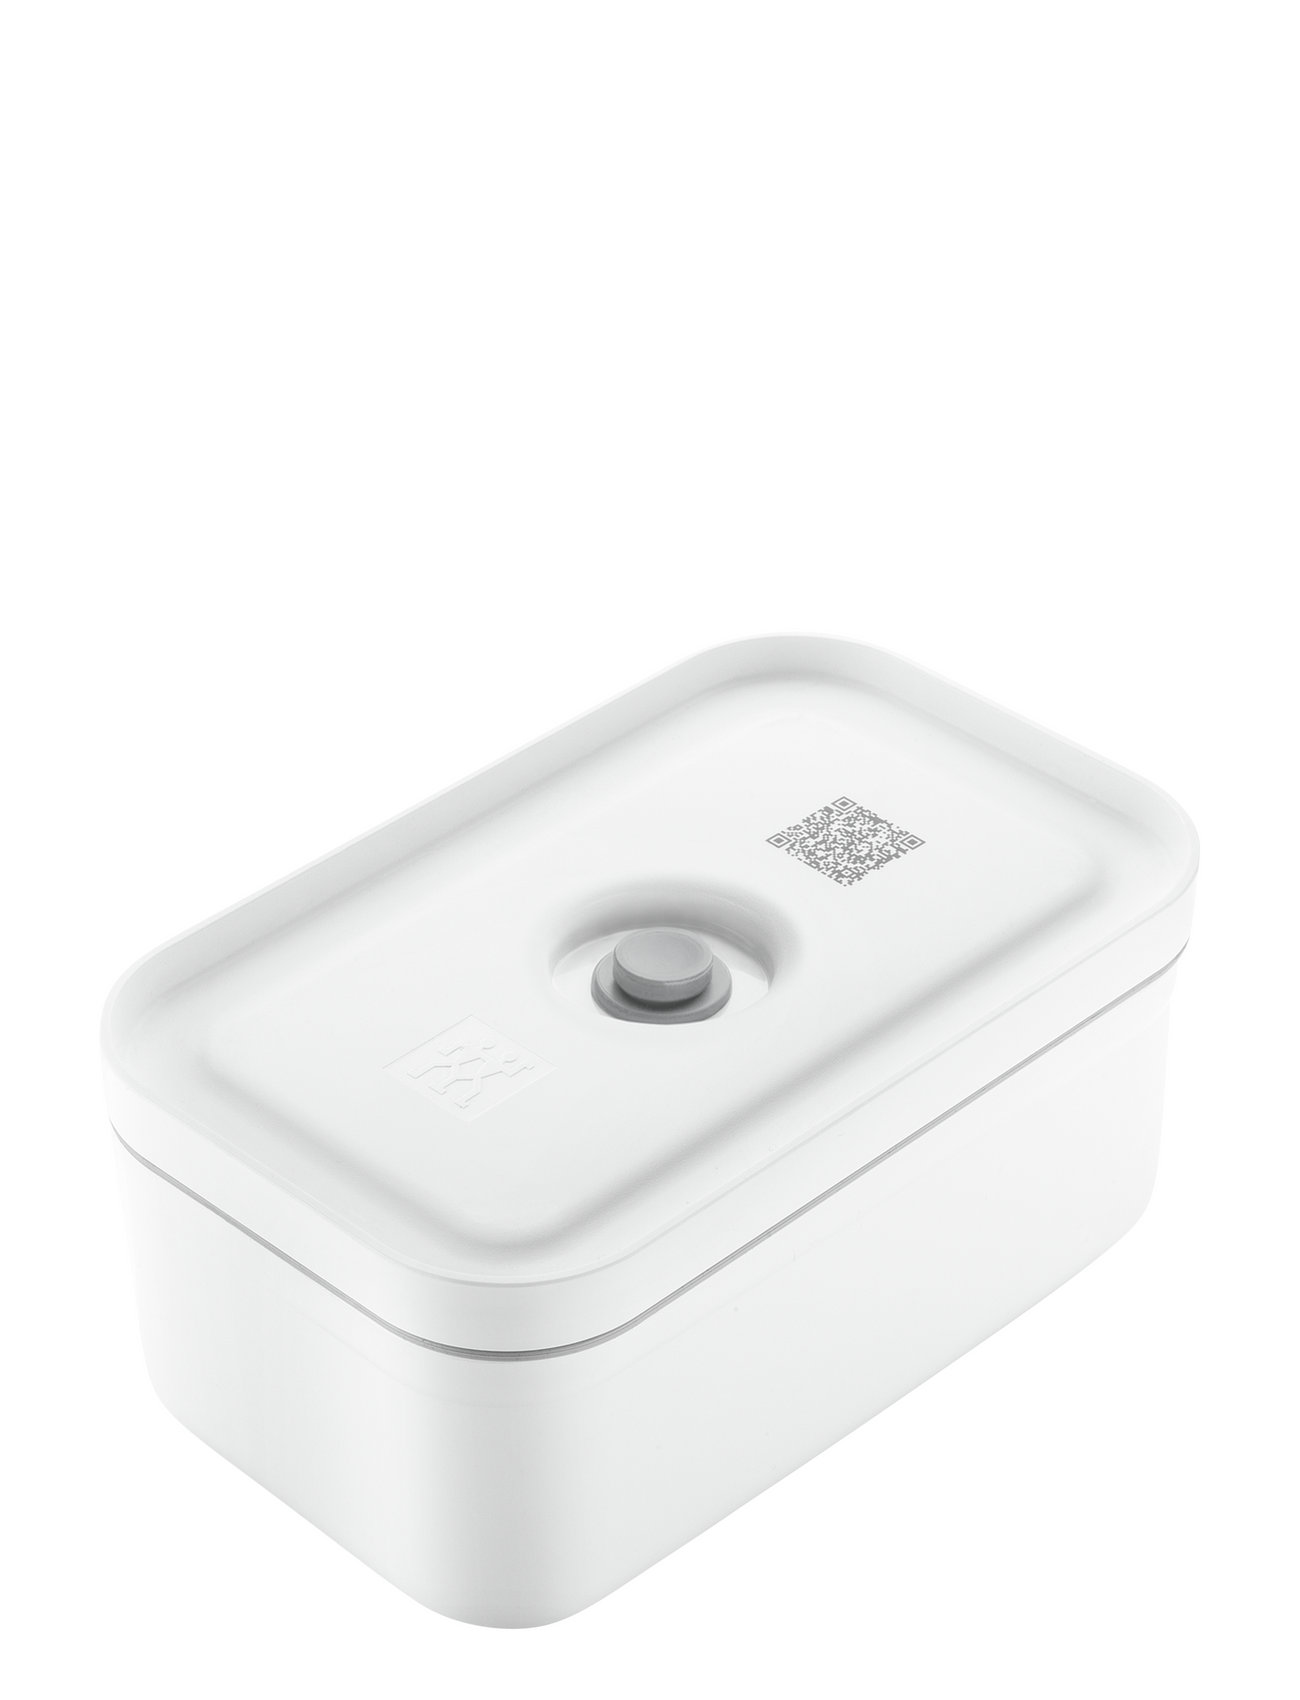 Fresh & Save, Vakuum Madkasser M Wi-Gr Plastik Home Kitchen Kitchen Storage Lunch Boxes White Zwilling